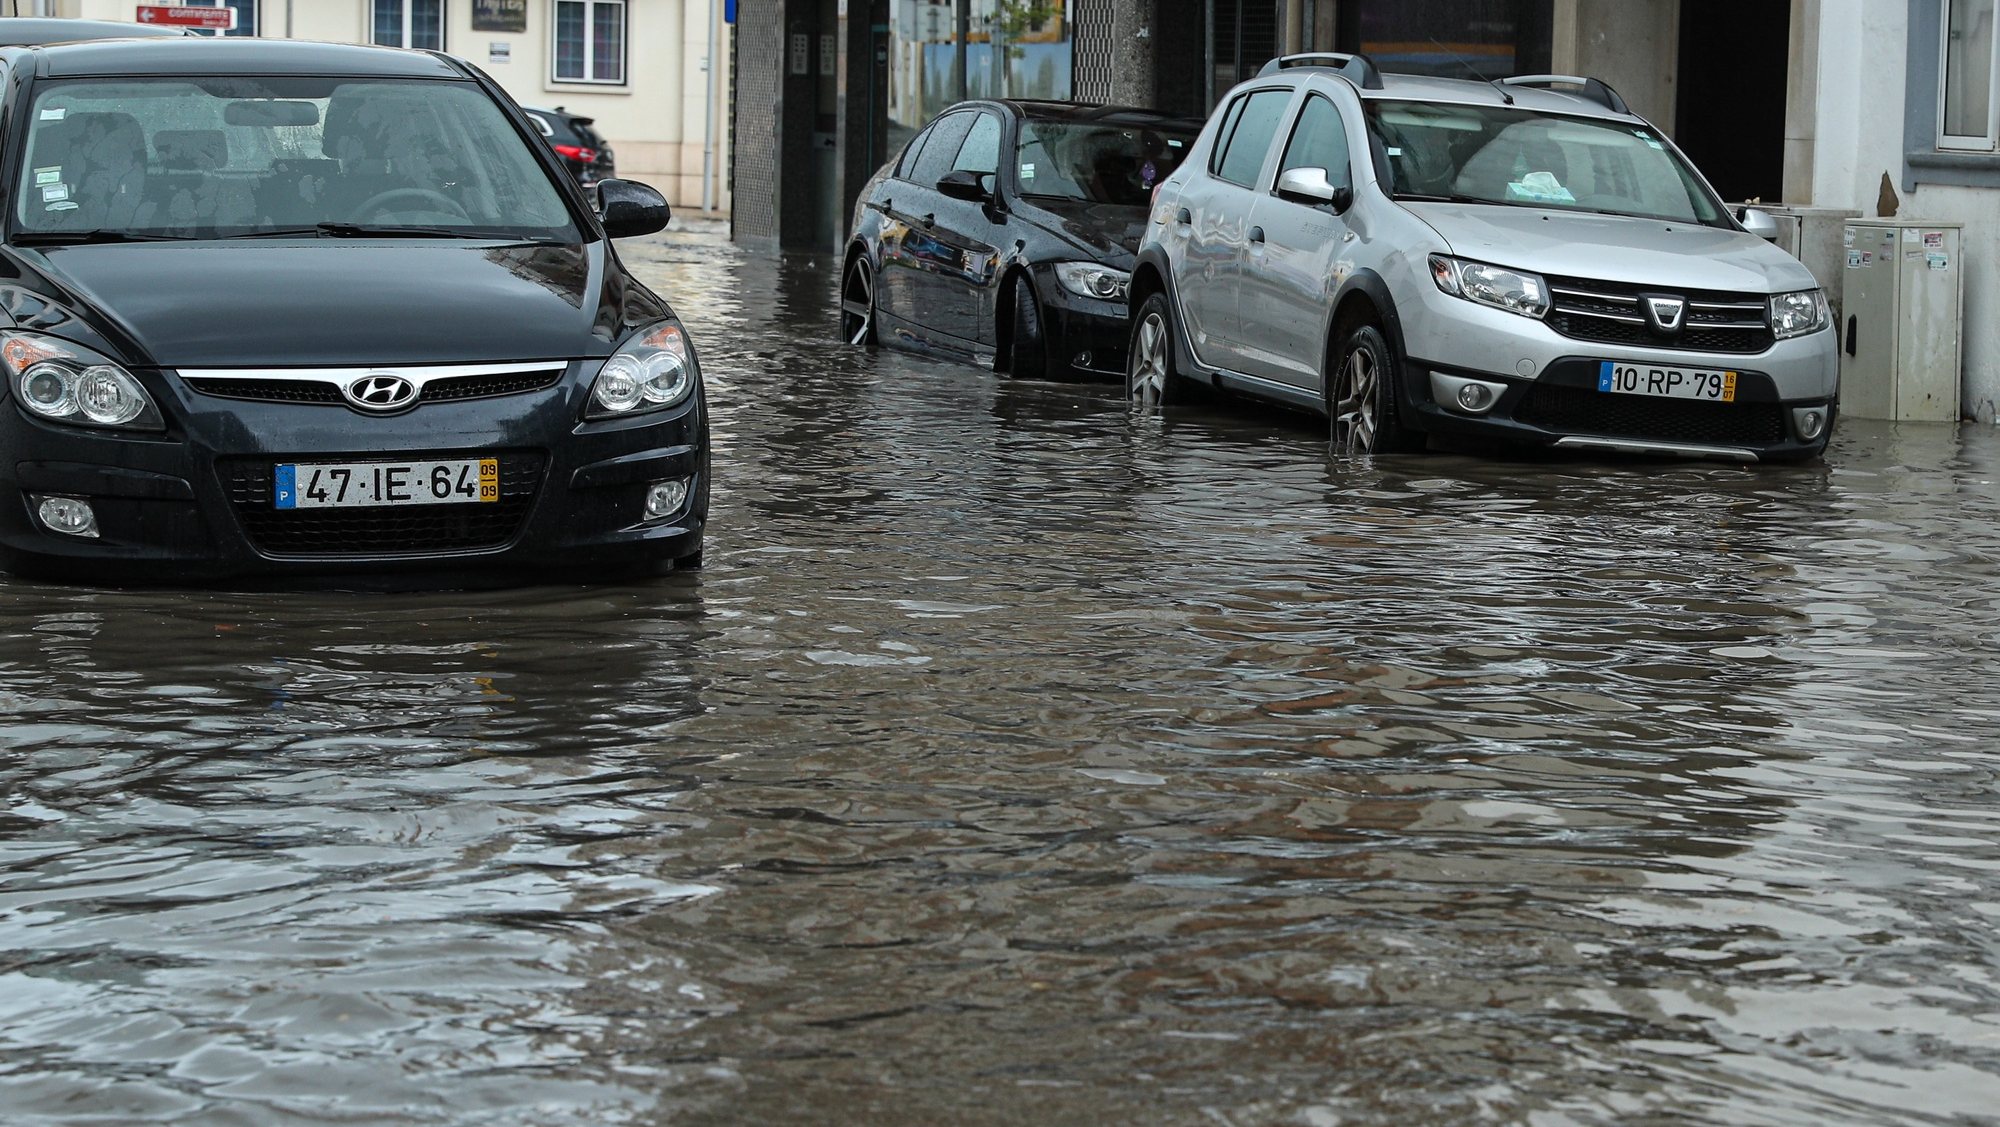 Chuva intensa em Faro, provoca várias inundações na baixa da cidade, Faro, 20 de março de 2022. LUÍS FORRA/LUSA